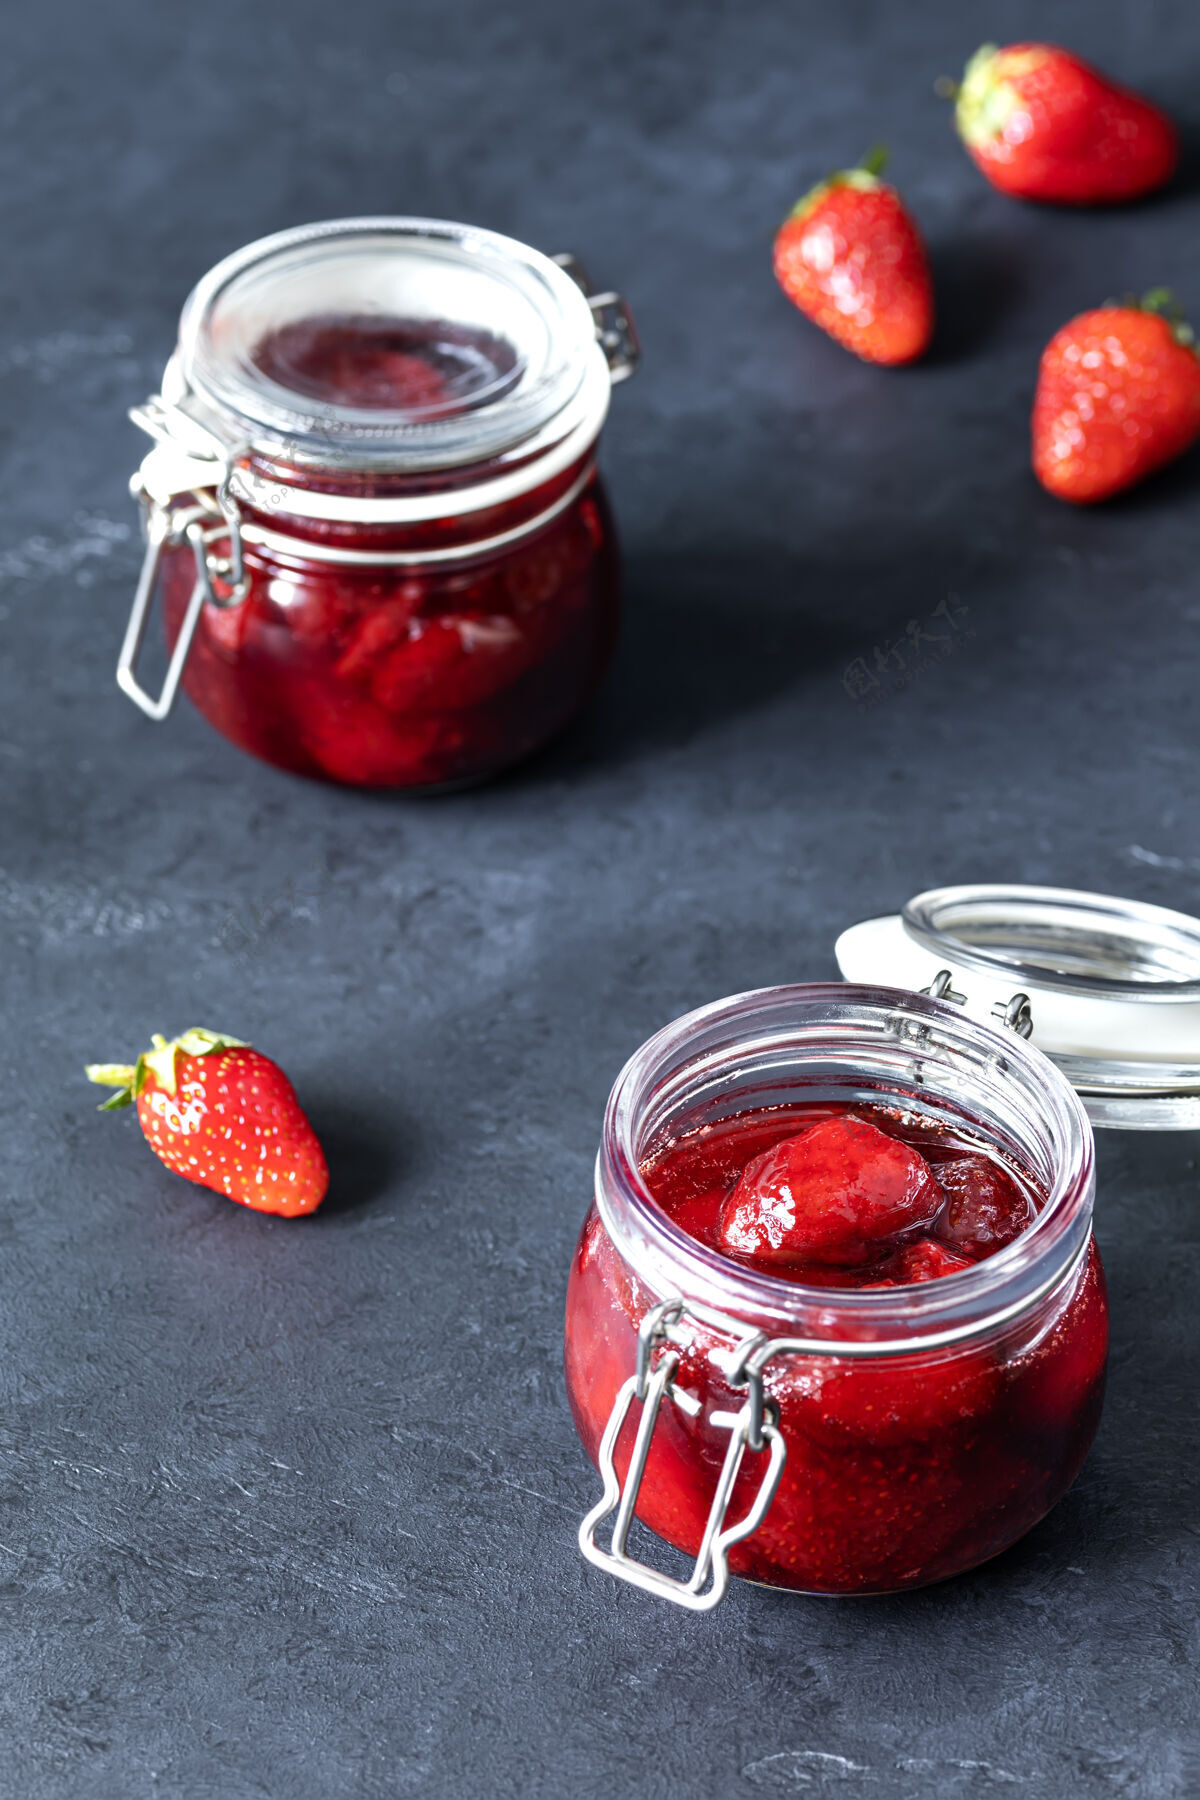 自封一罐罐自制草莓果酱和成熟的草莓放在黑暗的表面上甜食罐头浆果